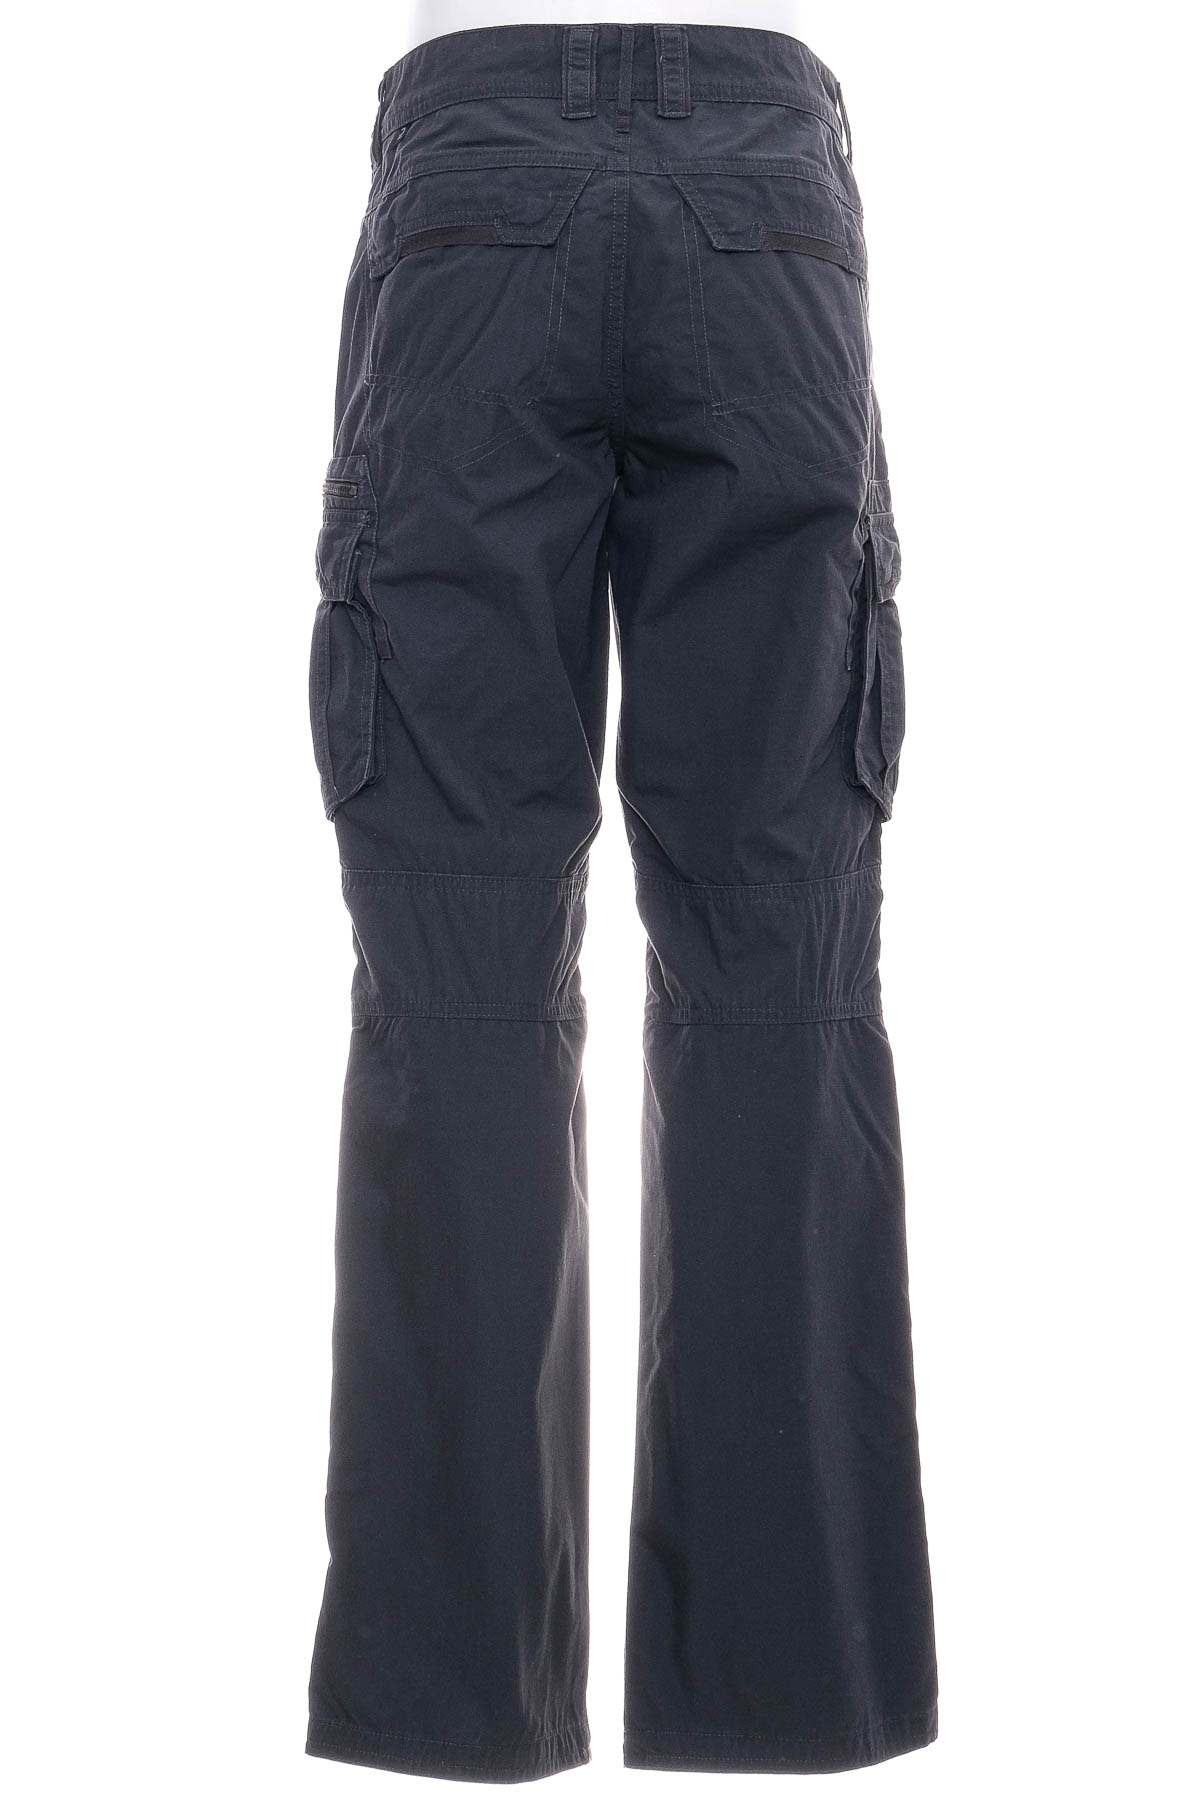 Men's trousers - FORCLAZ - 1